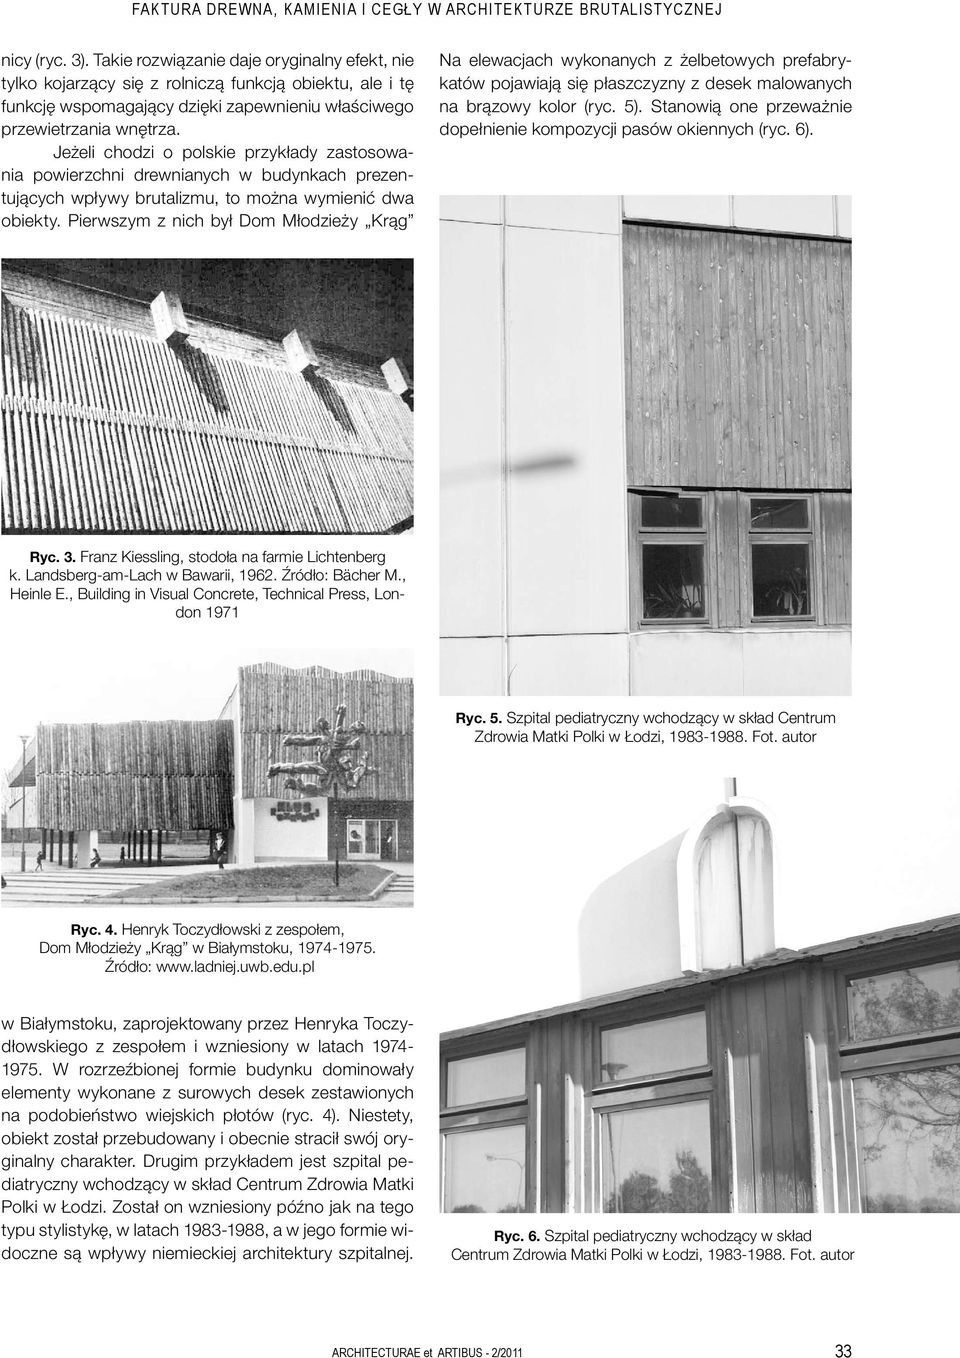 Jeżeli chodzi o polskie przykłady zastosowania powierzchni drewnianych w budynkach prezentujących wpływy brutalizmu, to można wymienić dwa obiekty.